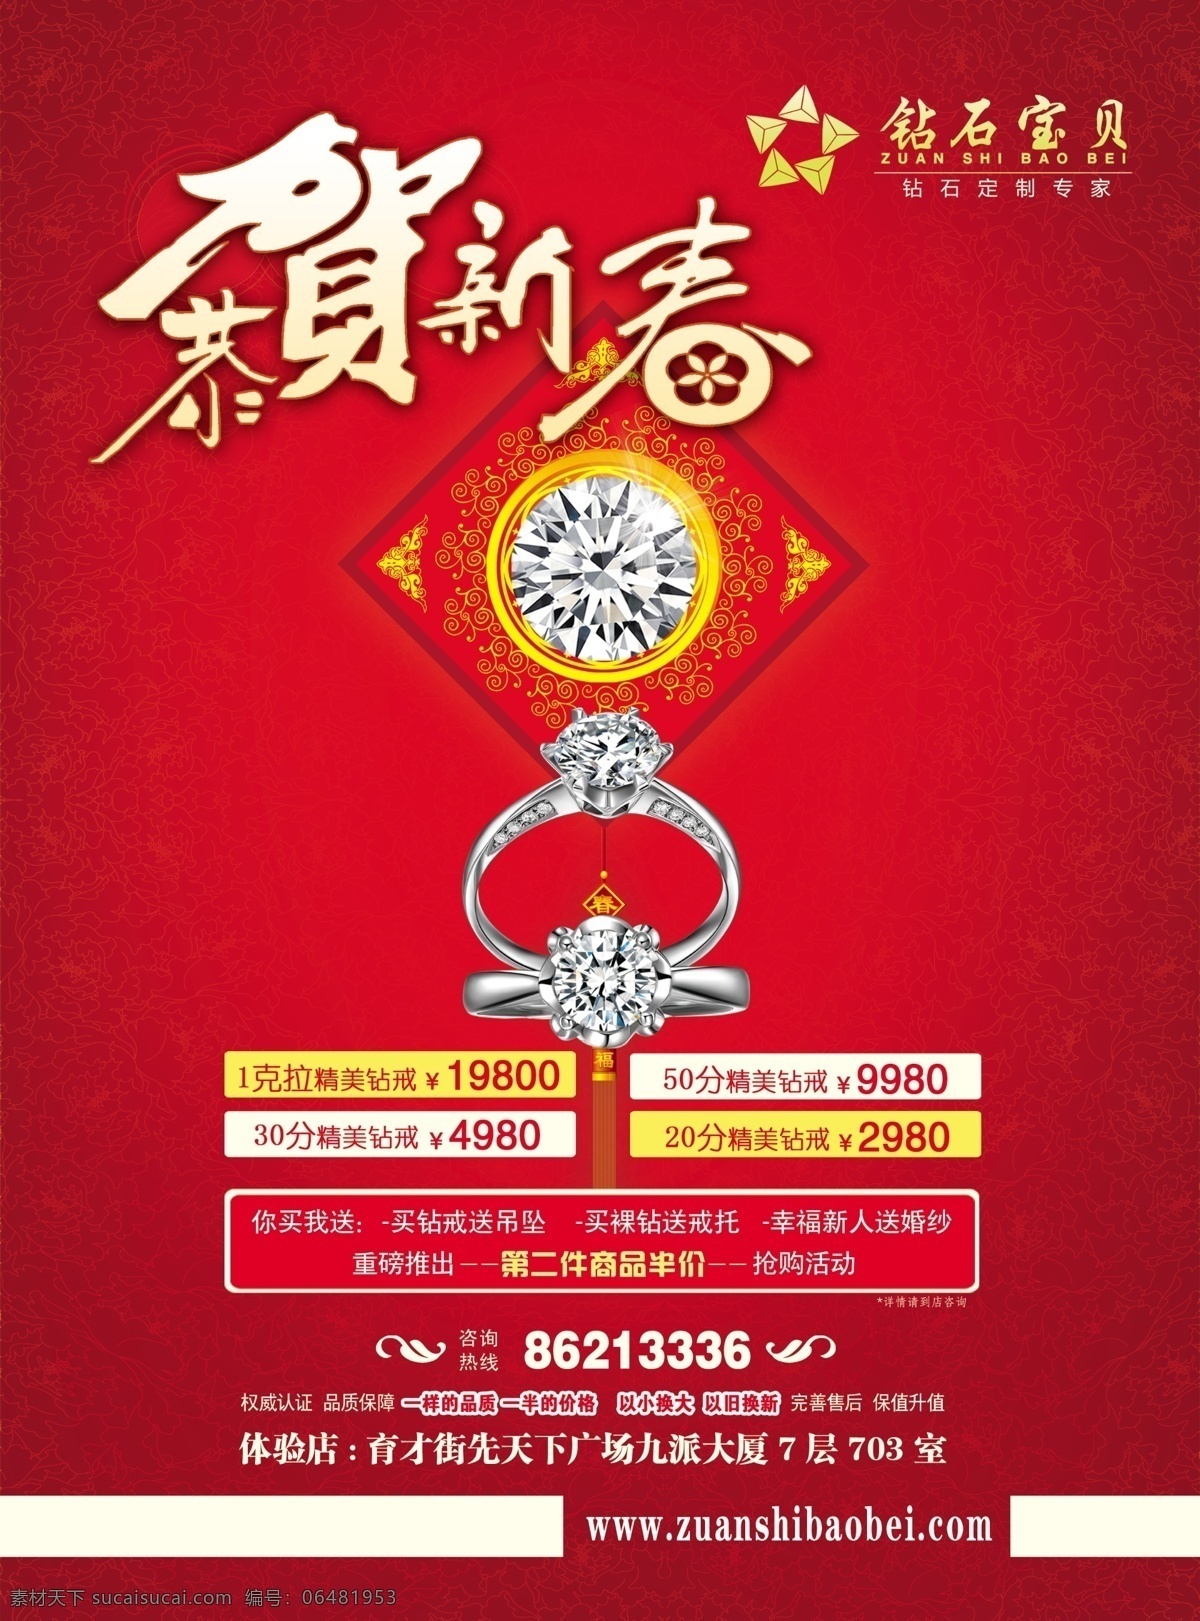 珠宝 新年广告 钻戒 新年 恭贺新春 戒指 中国结 广告设计模板 源文件